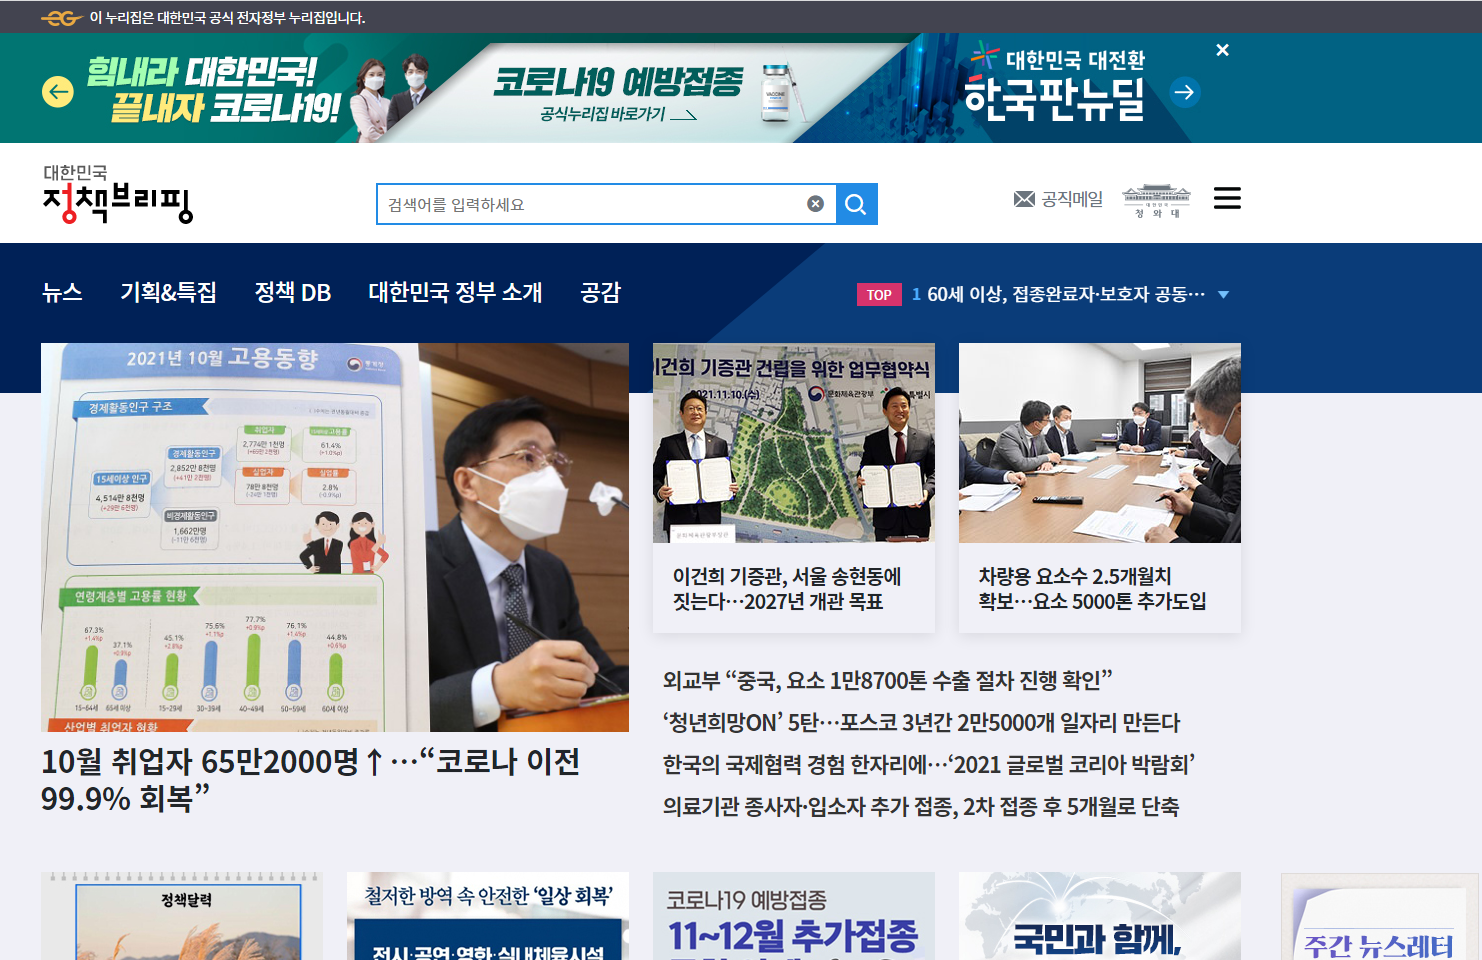 이 사진은 대한민국 정책브리핑 홈페이지 메인의 사진입니다